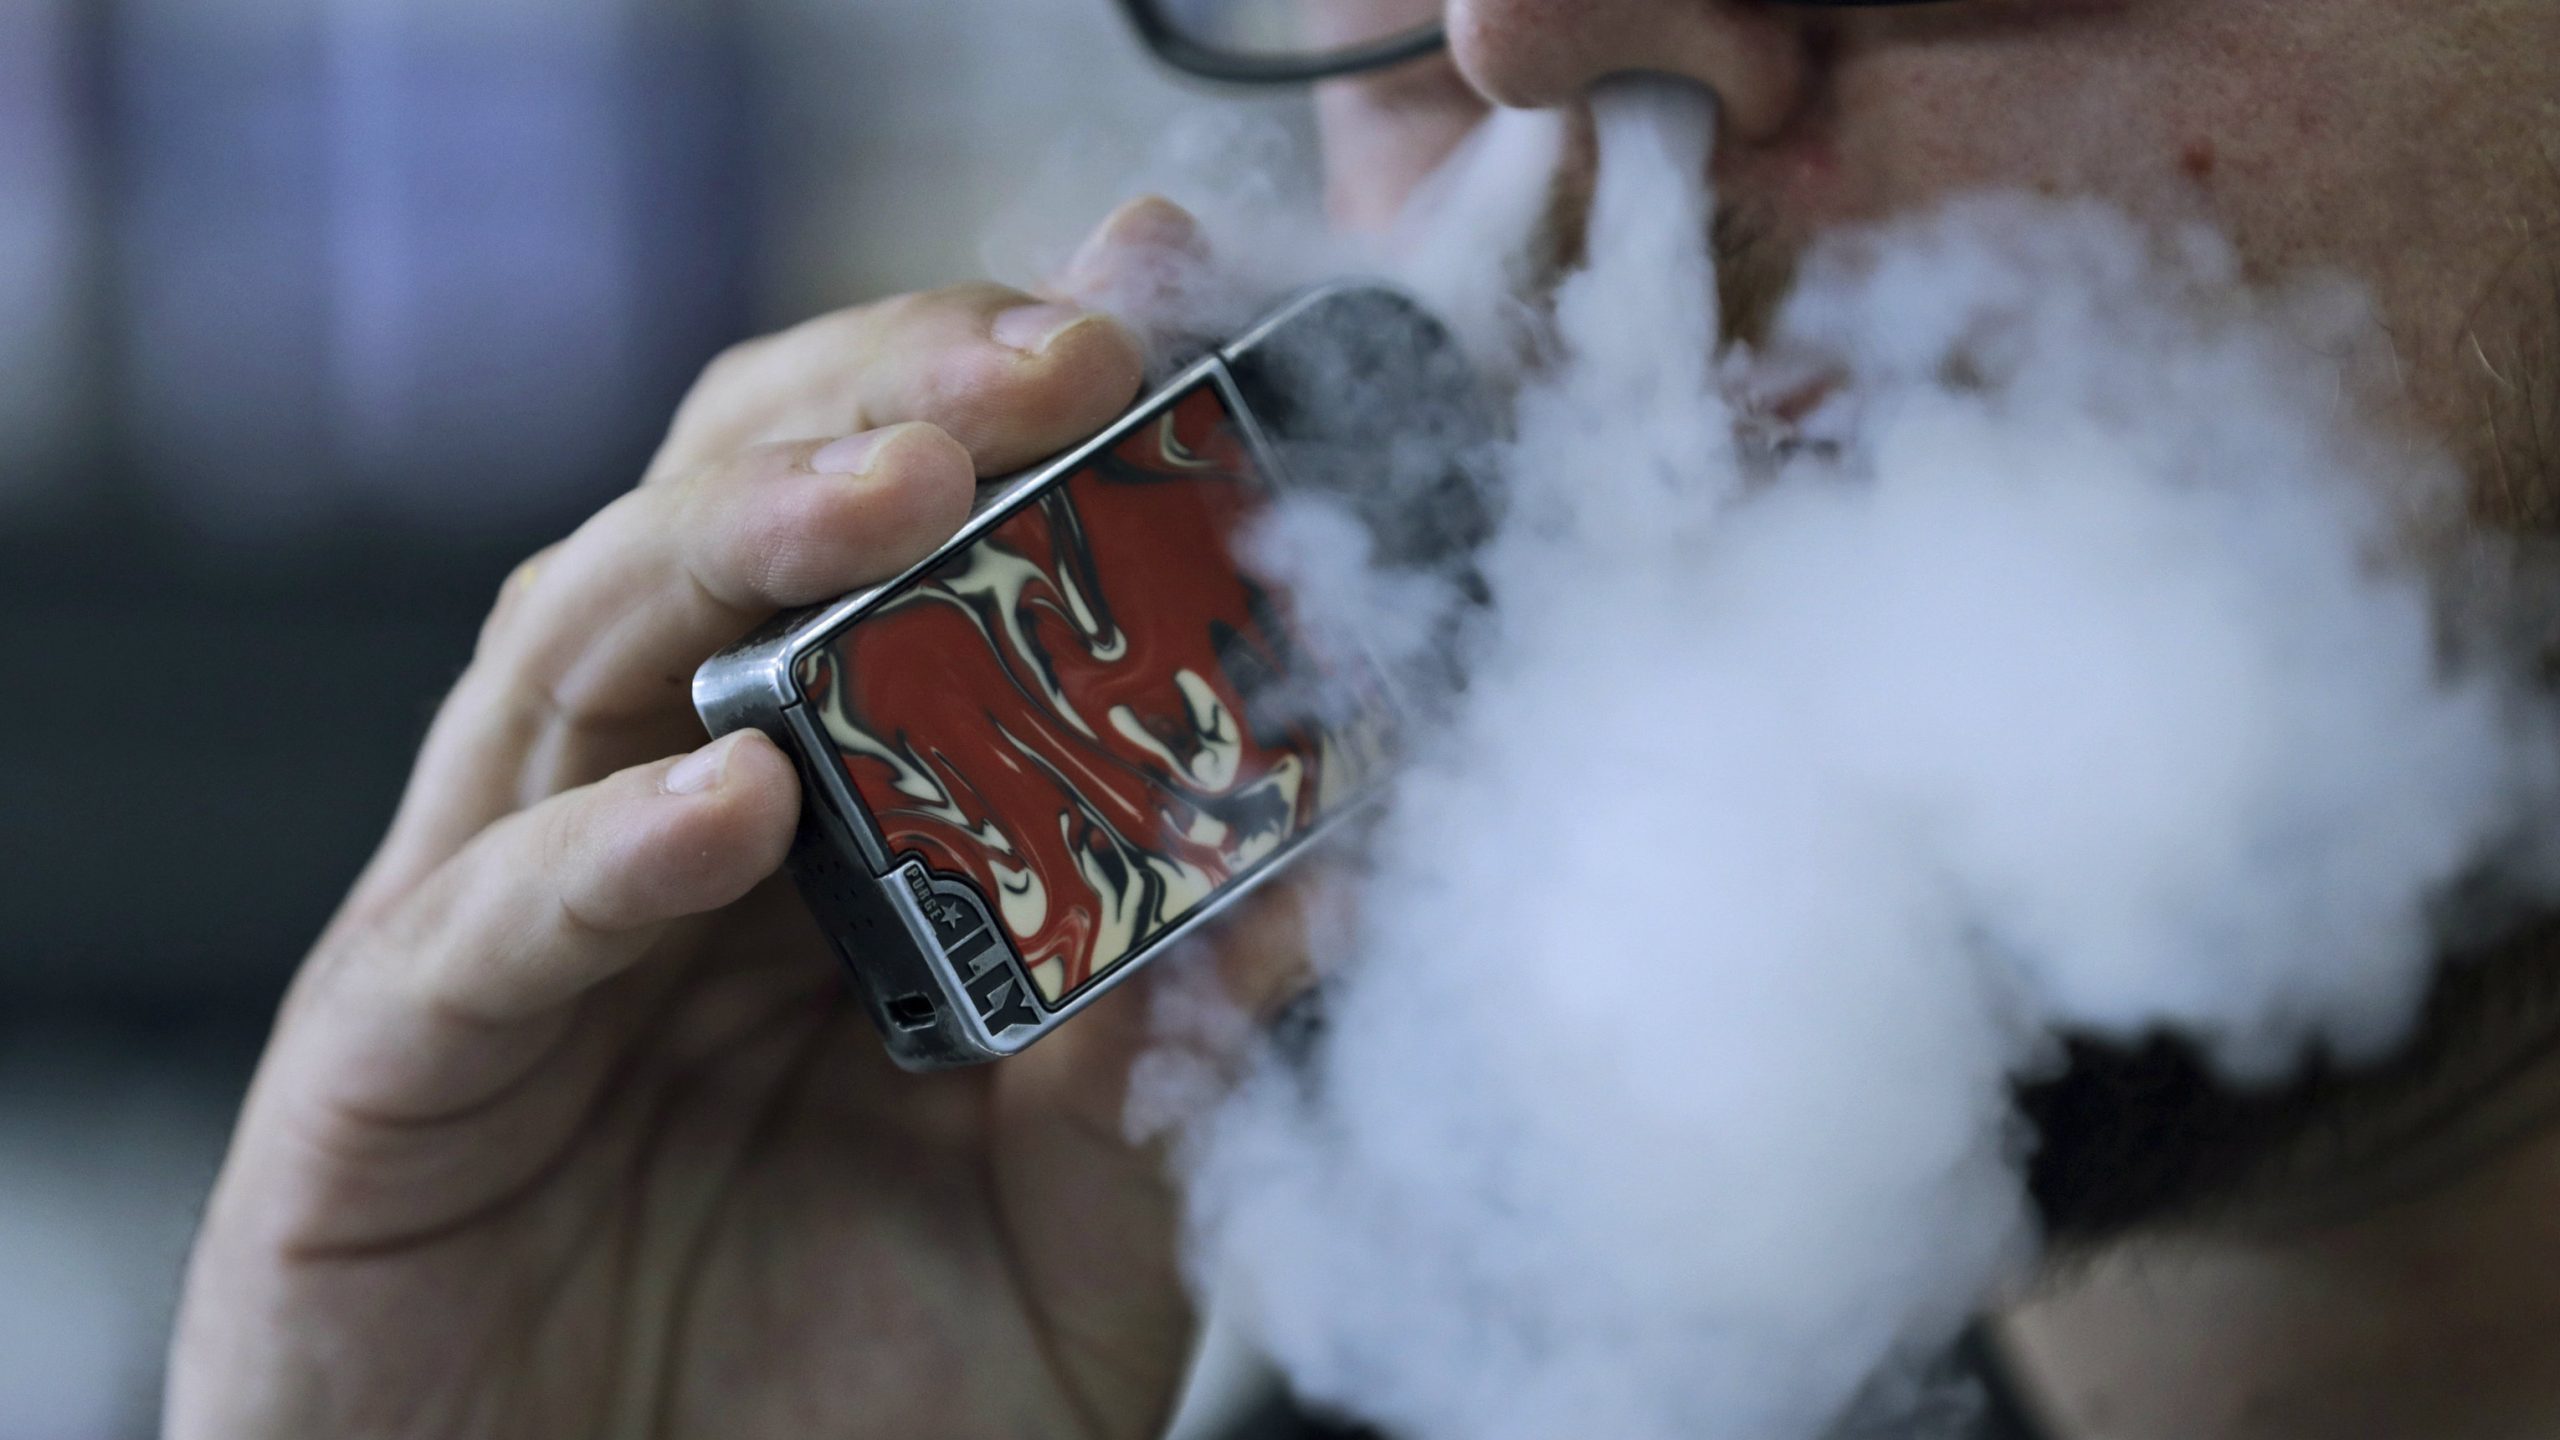 Rezultati istraživanja o elektronskim cigaretama dovedeni u sumnju 1